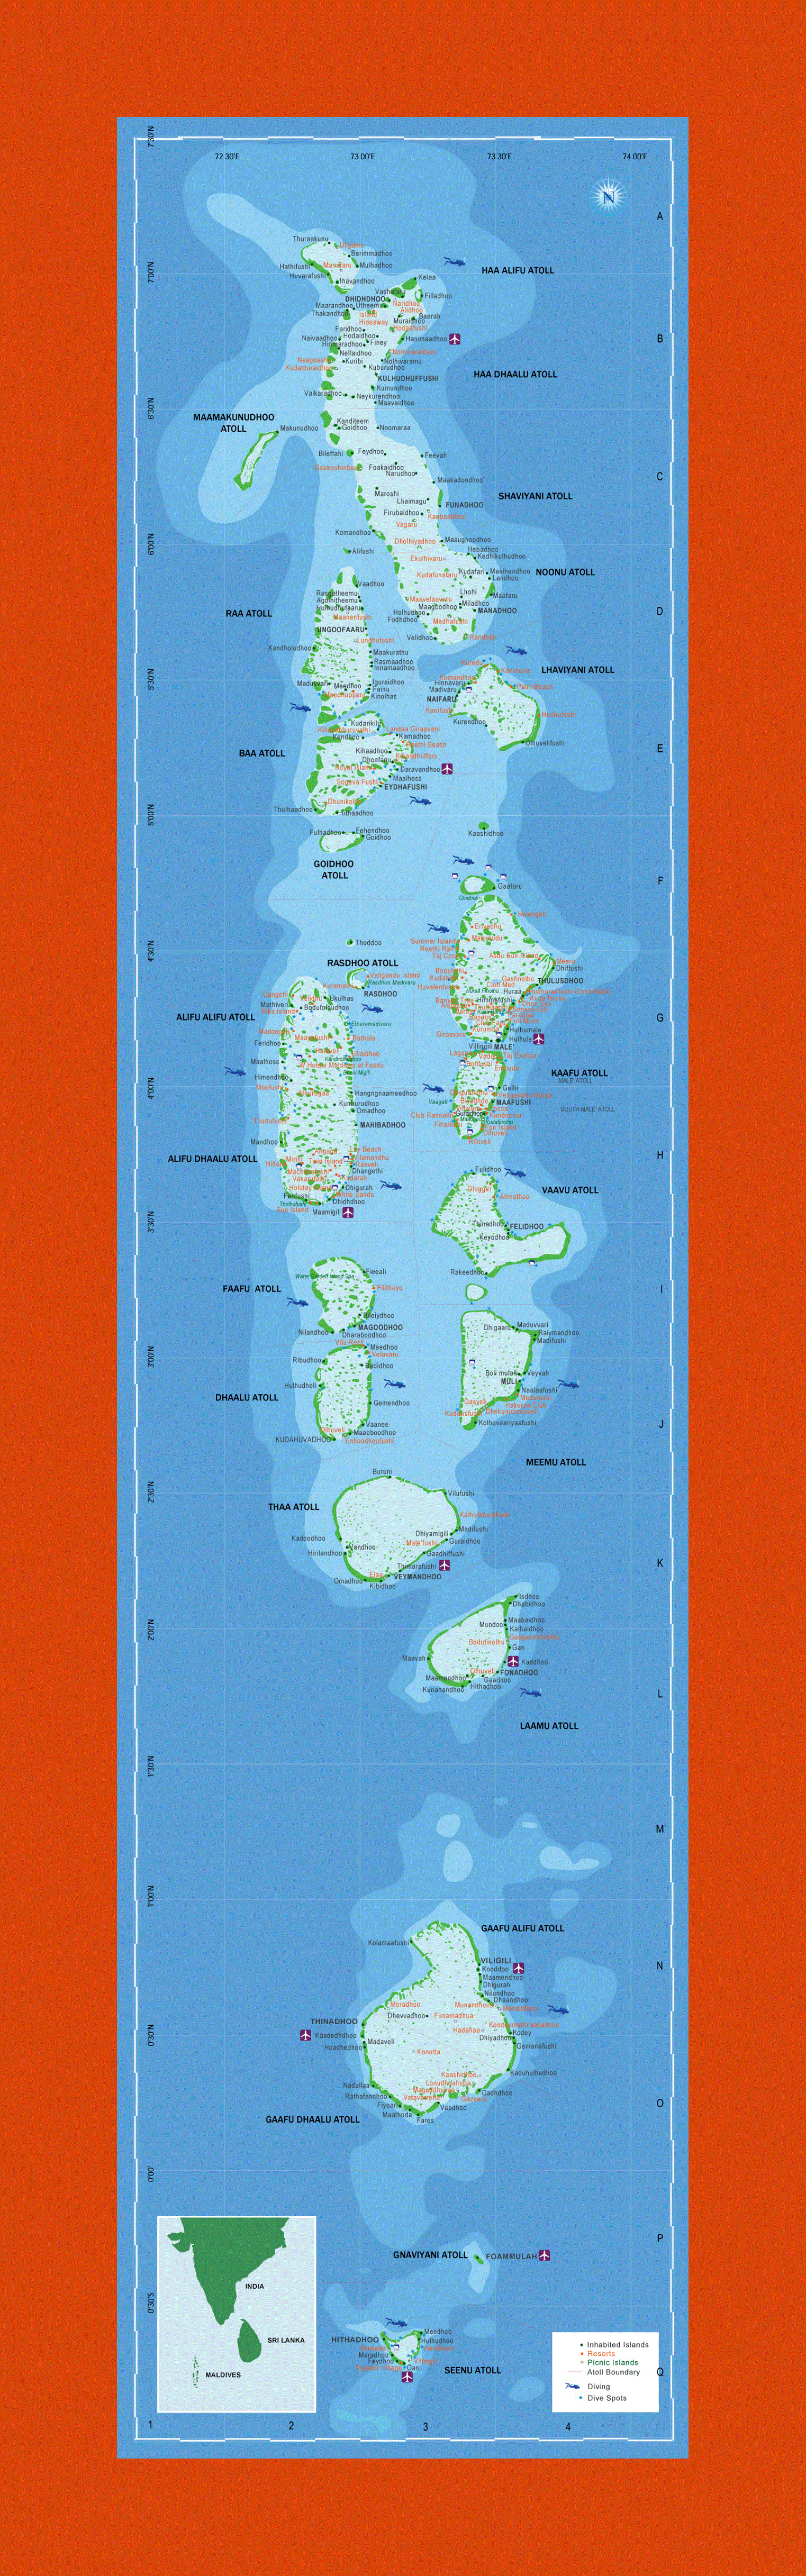 Tourist map of Maldives